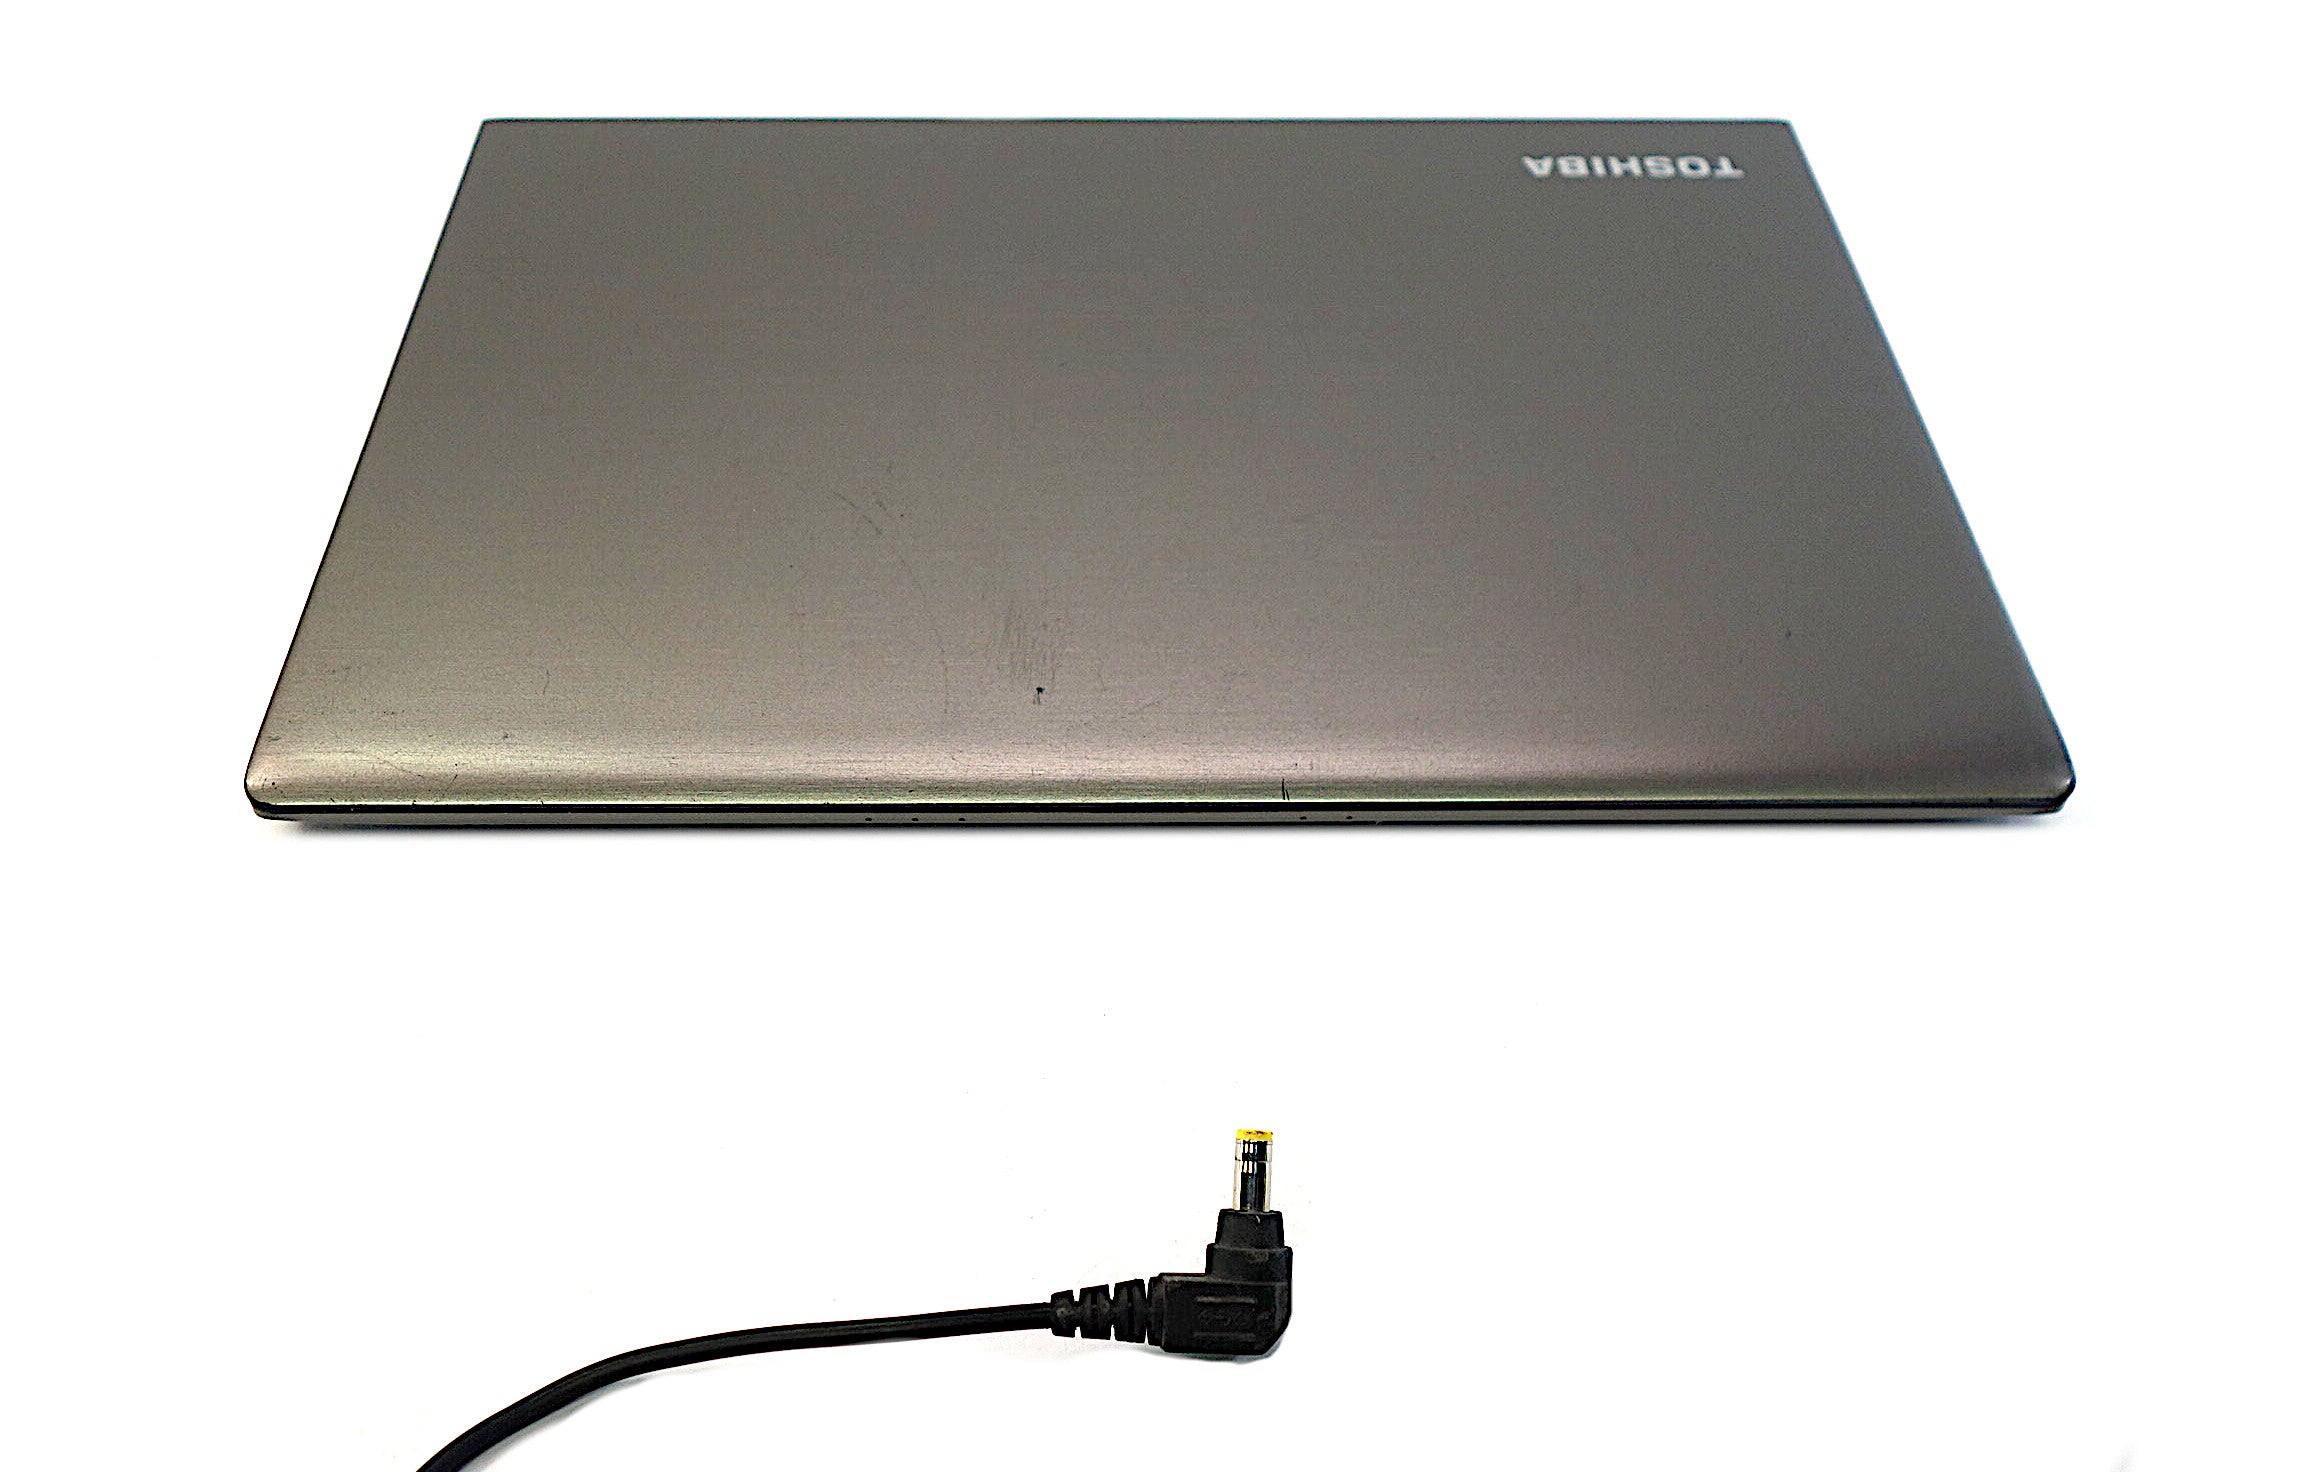 Toshiba Portege Z30-C Laptop, 13.3" i5 6th Gen, 8GB RAM, 256GB SSD